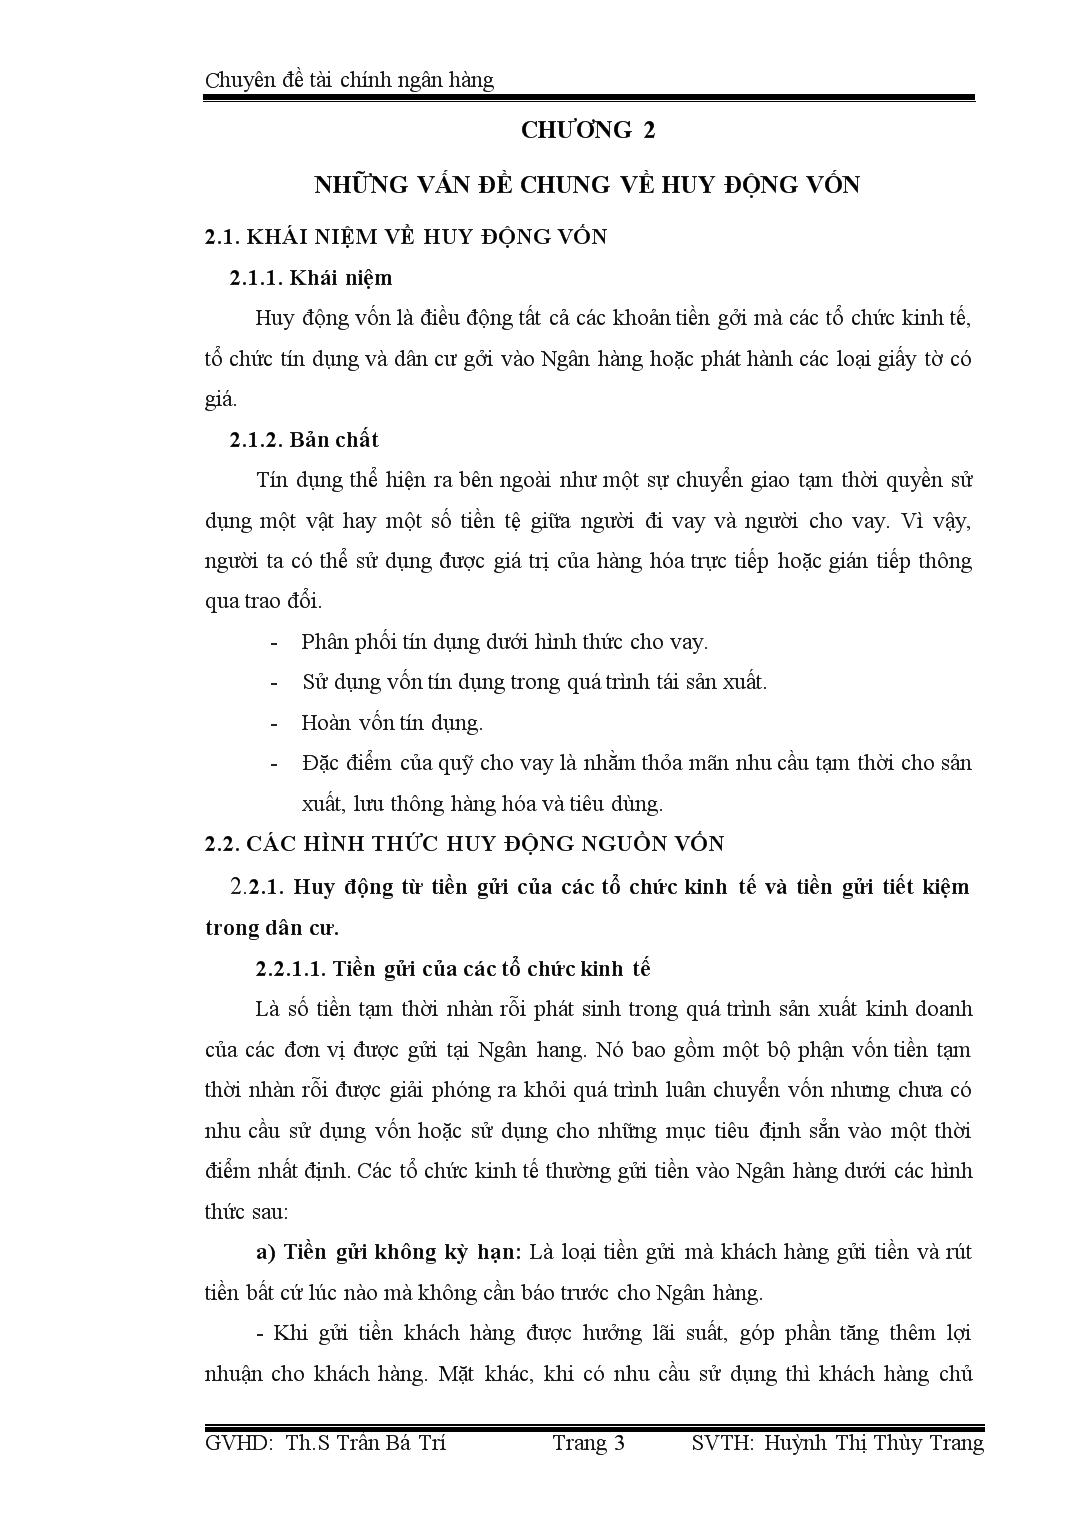 Chuyên đề Tìm hiểu tình hình huy động nguồn vốn của các ngân hàng Việt Nam hiện nay trang 3